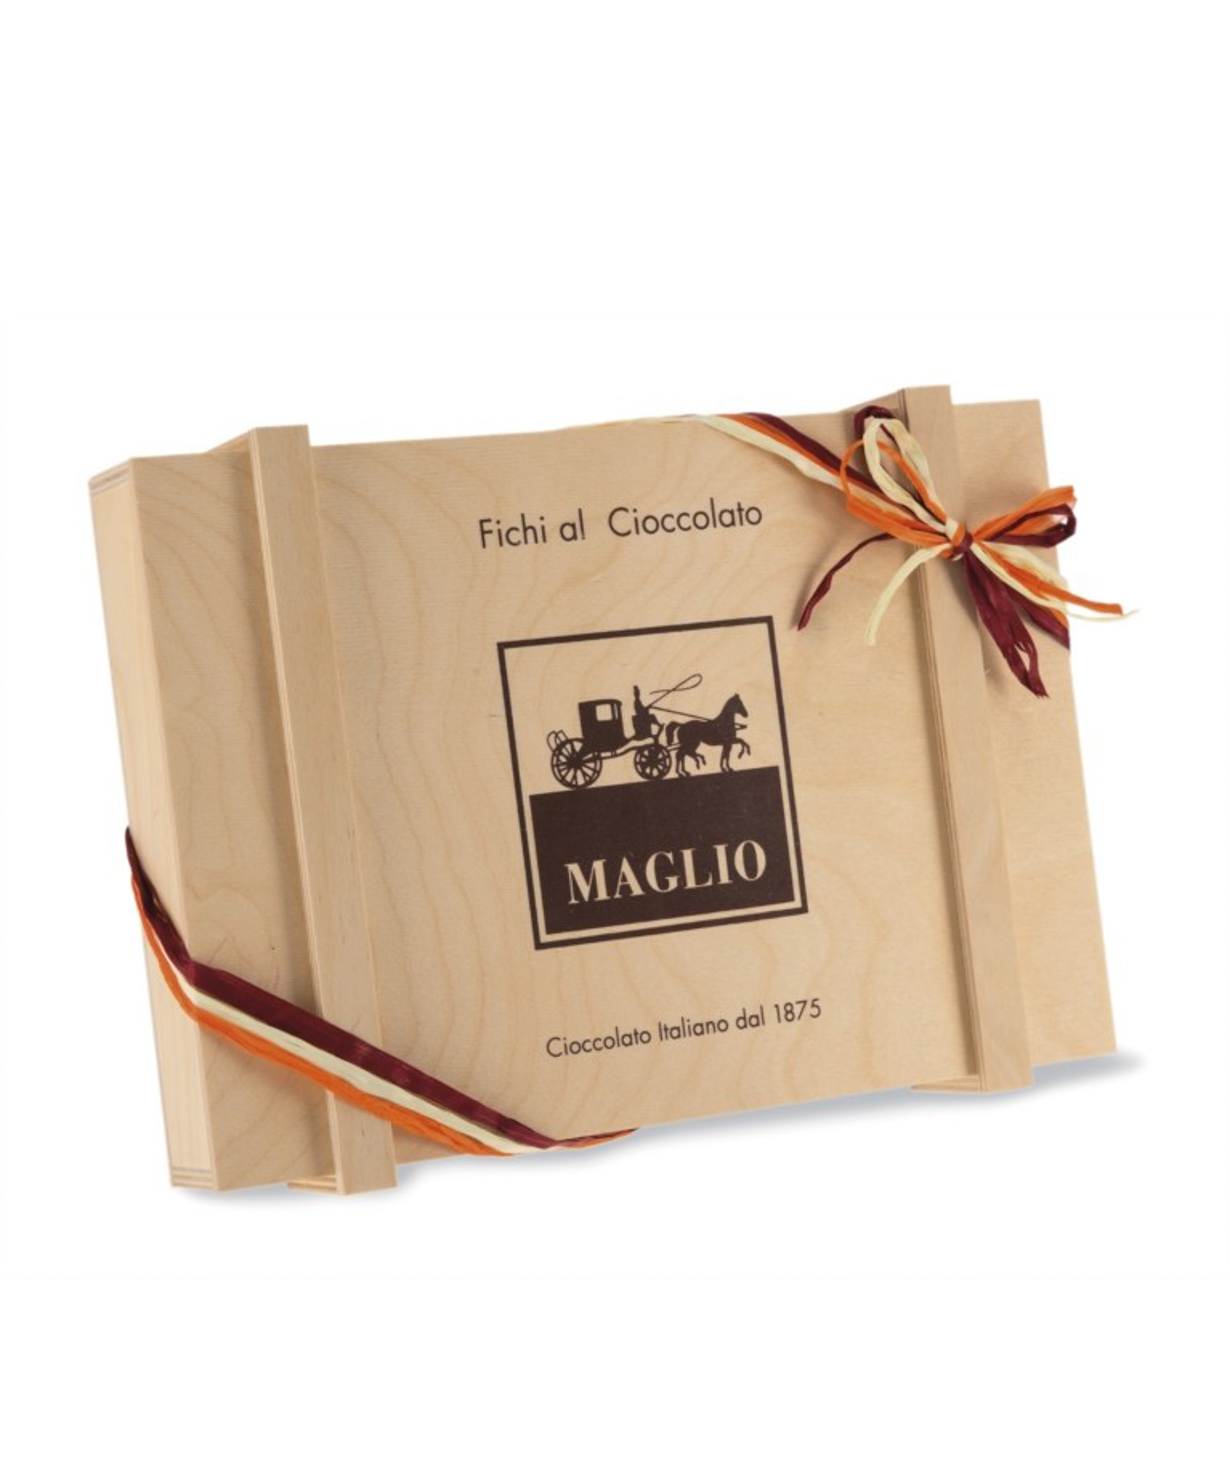 Candies `Maglio Fichi Al Cioccolato` chocolate, in a wooden box